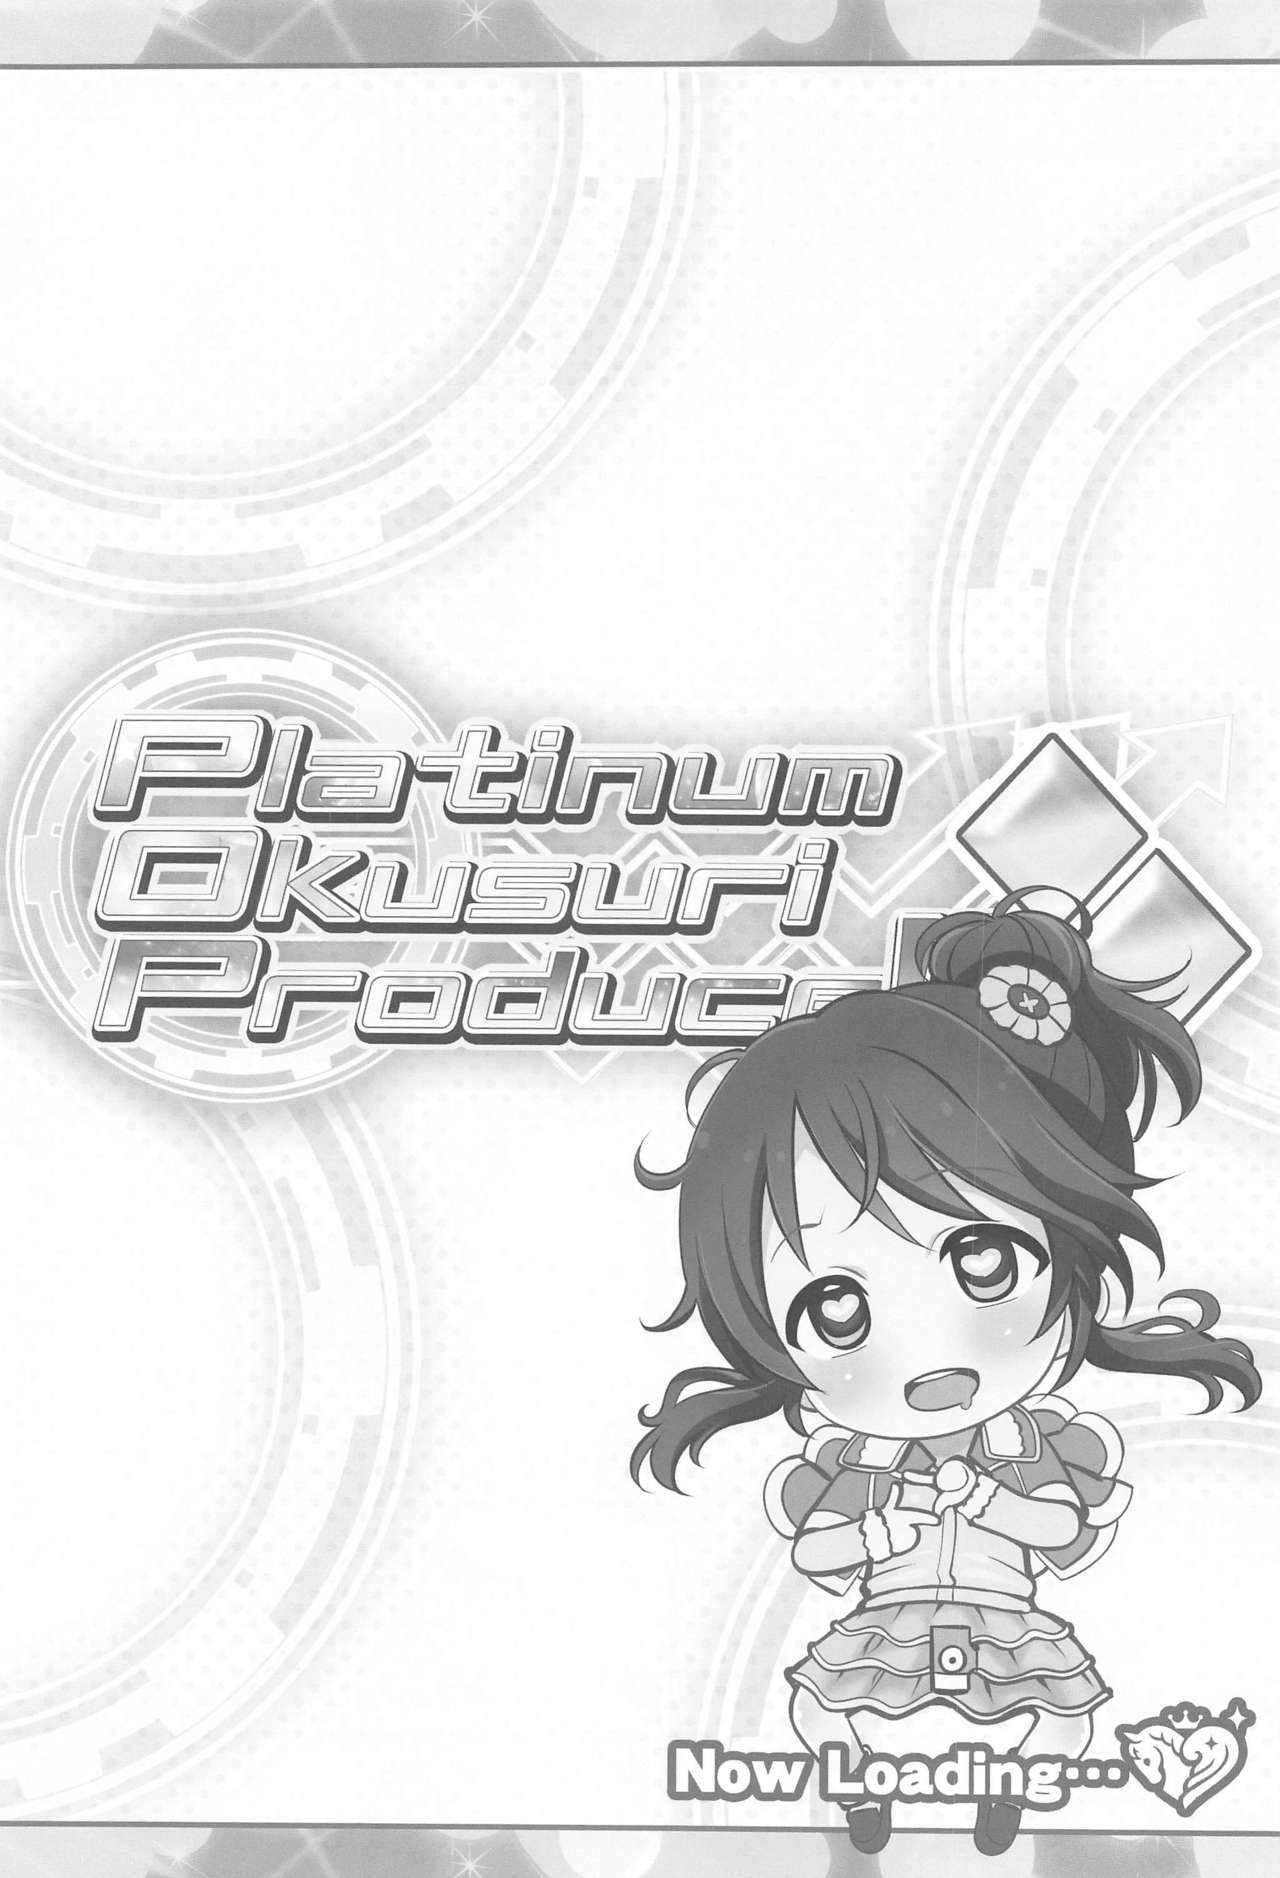 (サンクリ2021 Spring) [ふらいぱん大魔王 (提灯暗光)] Platinum Okusuri Produce!!!! ◇◇ (アイドルマスター シンデレラガールズ)